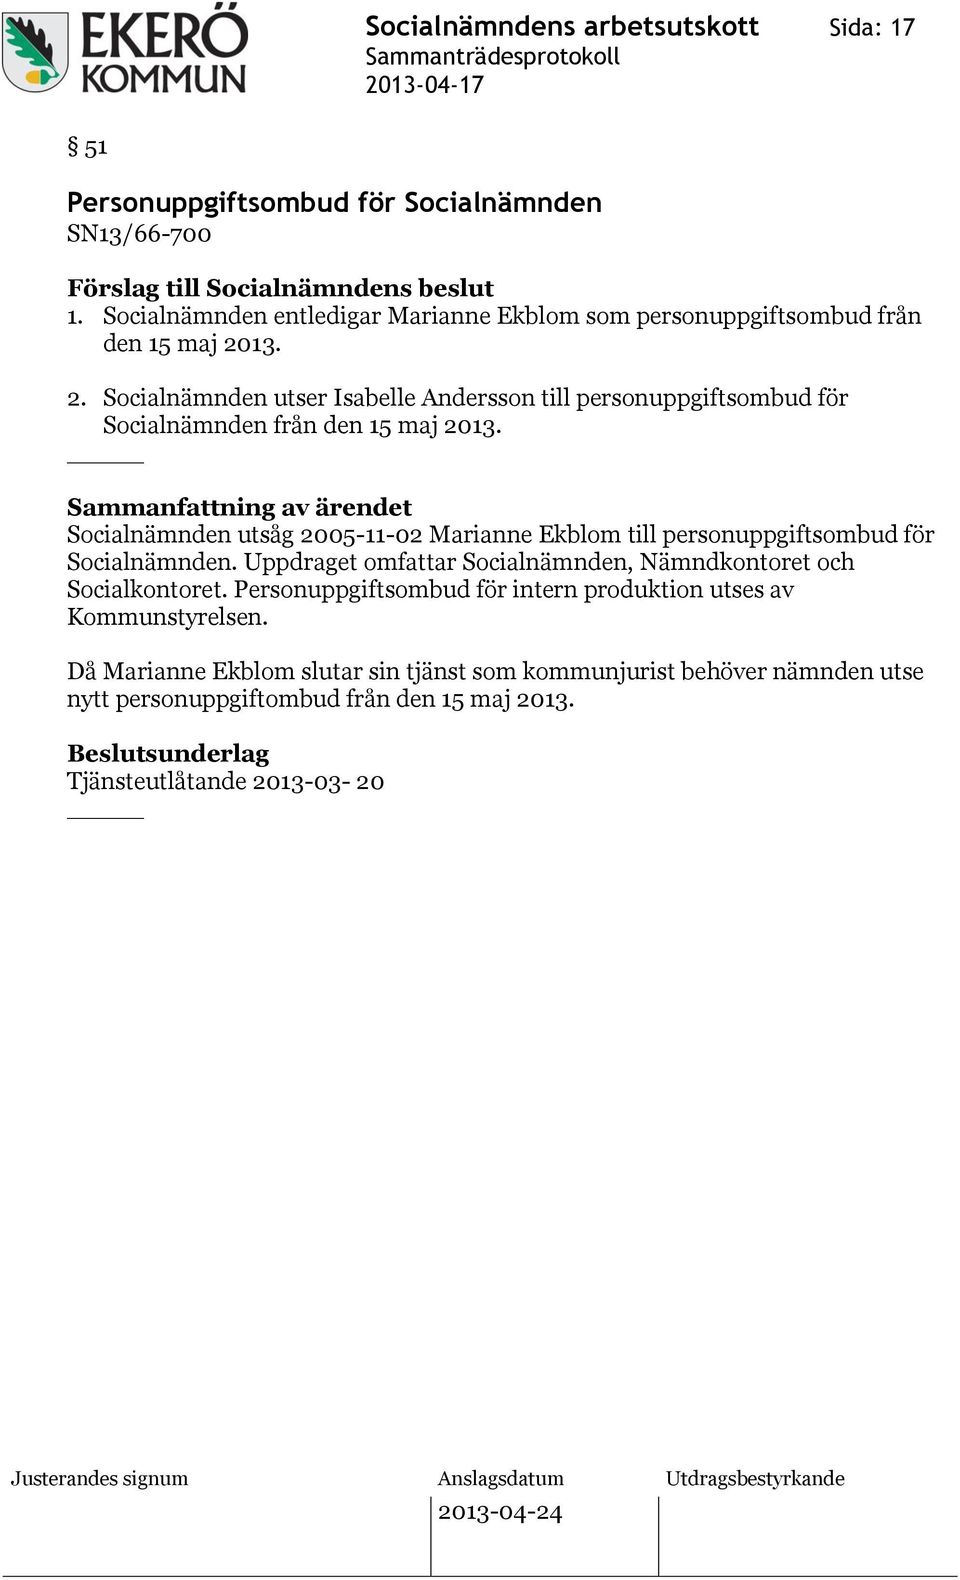 13. 2. Socialnämnden utser Isabelle Andersson till personuppgiftsombud för Socialnämnden från den 15 maj 2013.